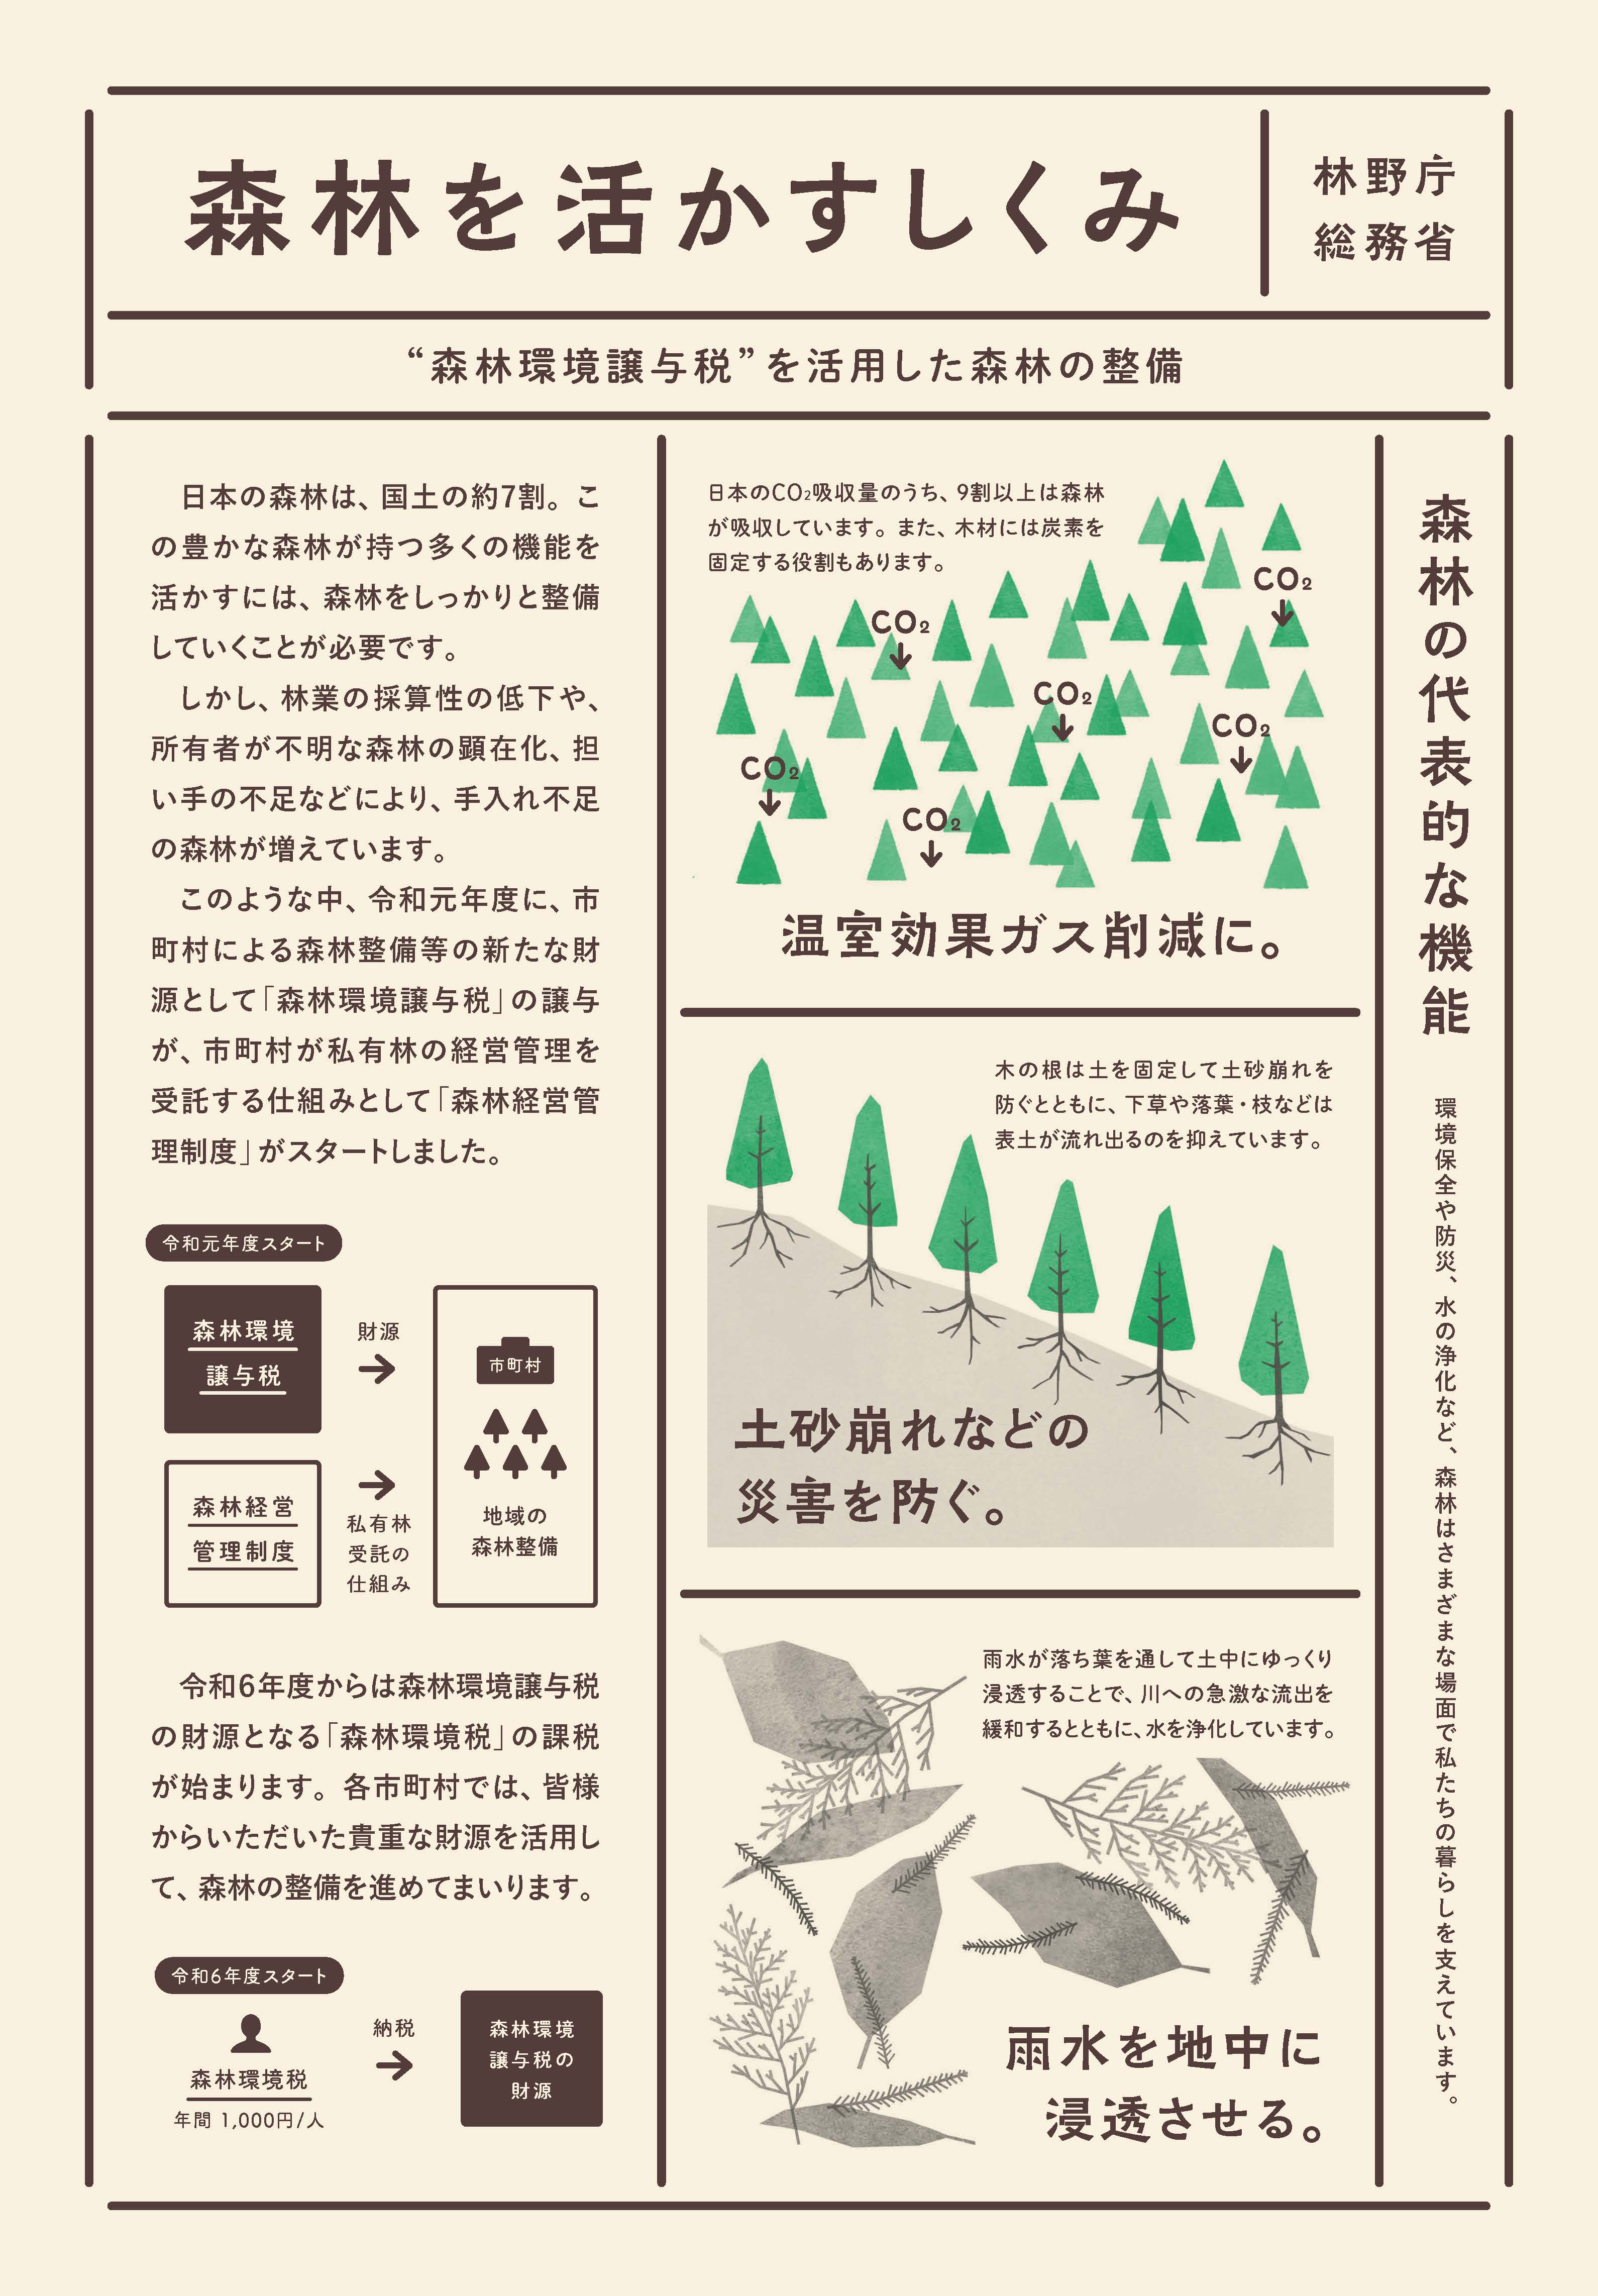 森林環境譲与税を活用した自治体の取組の紹介 Vol.13